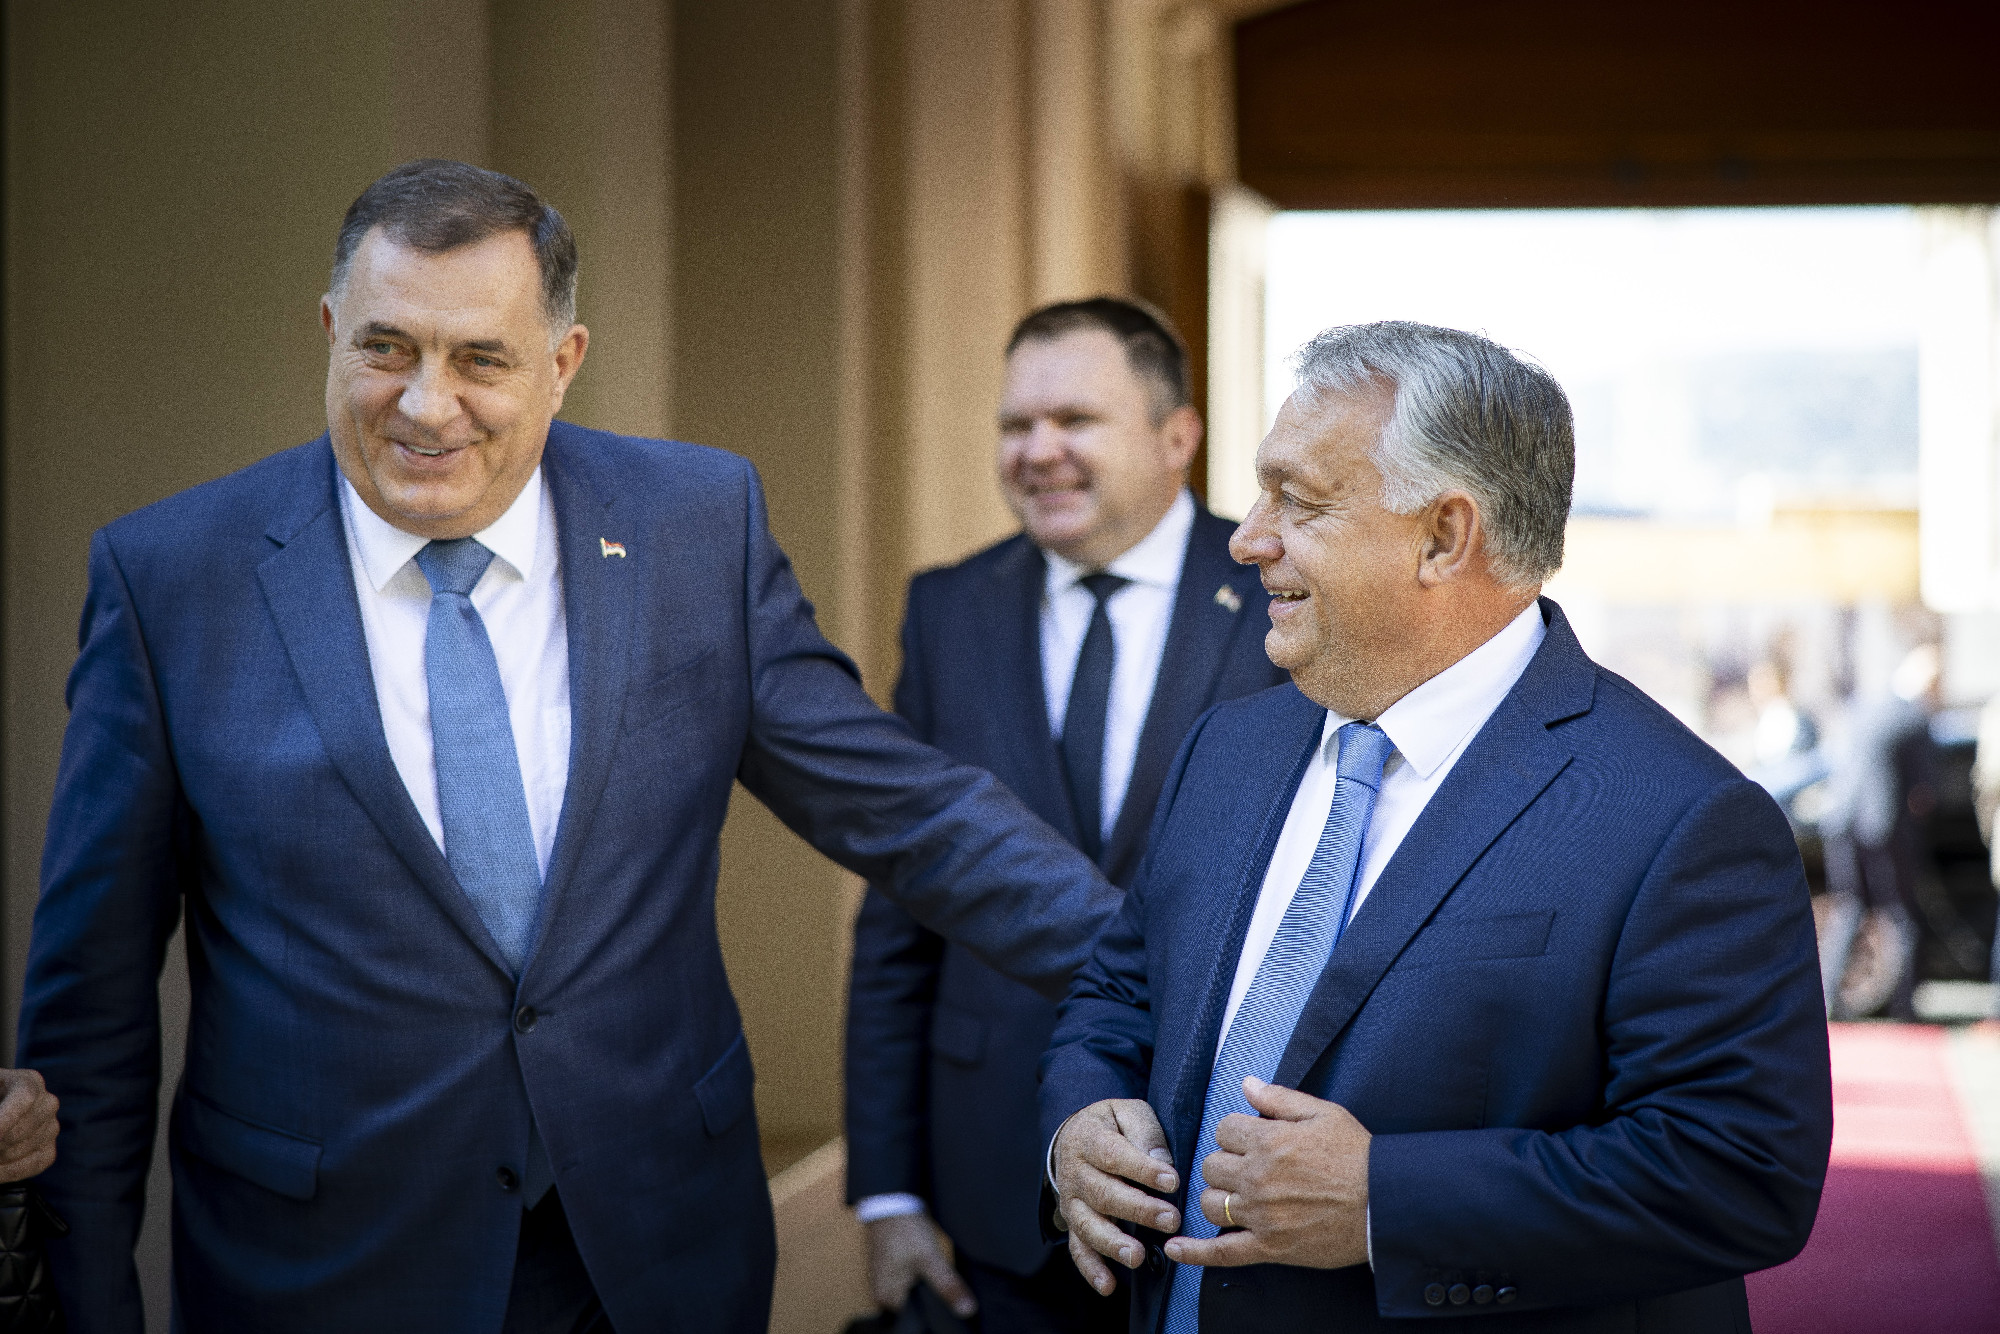 Nagyot mondott és nagyot lépne Orbán szeparatista barátja